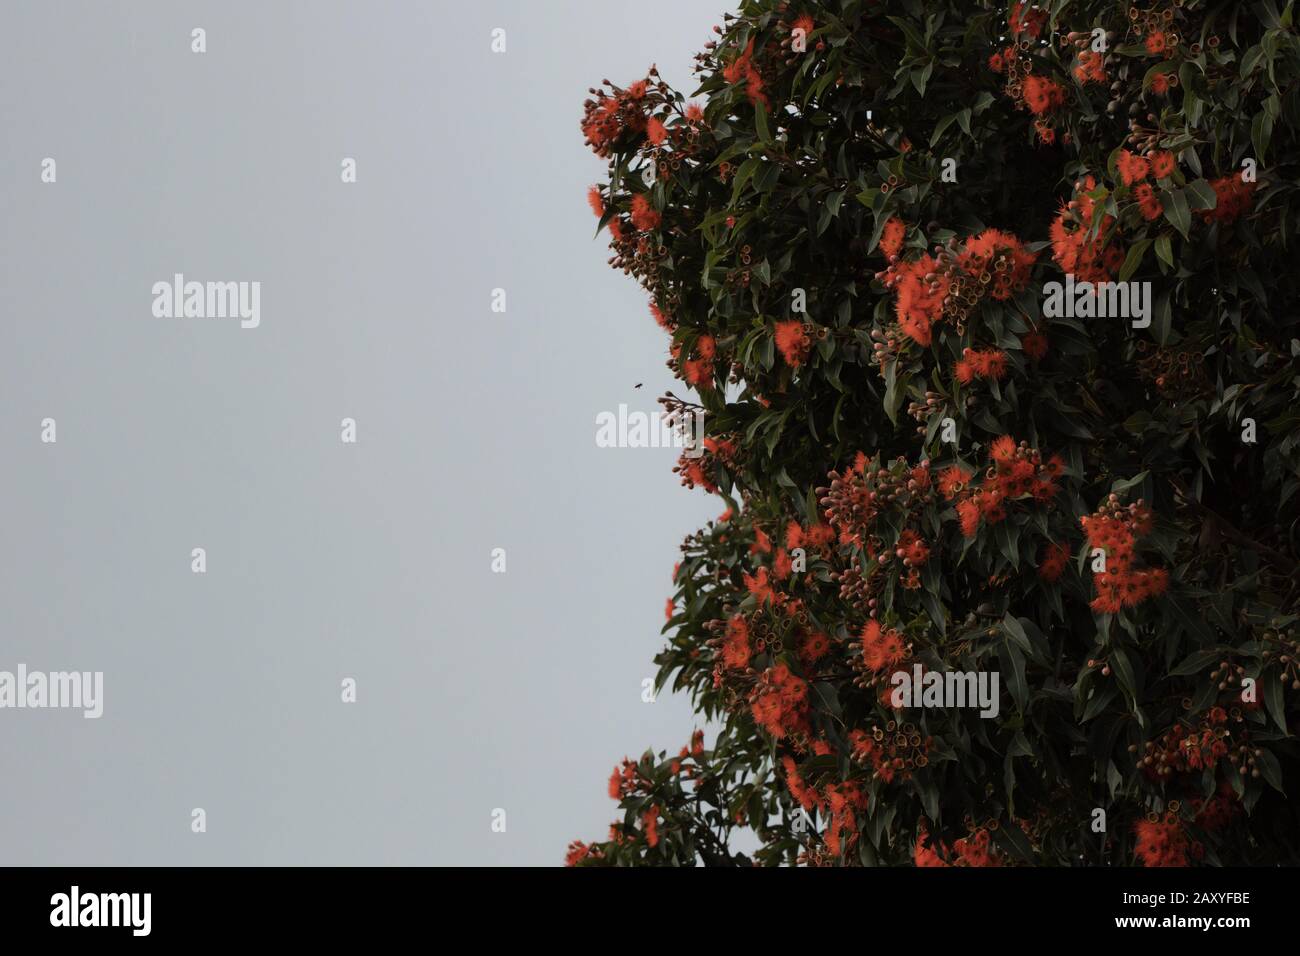 Farbfoto von Eukalyptusbaum mit roten Blumen, die von einer Biene besucht werden Stockfoto